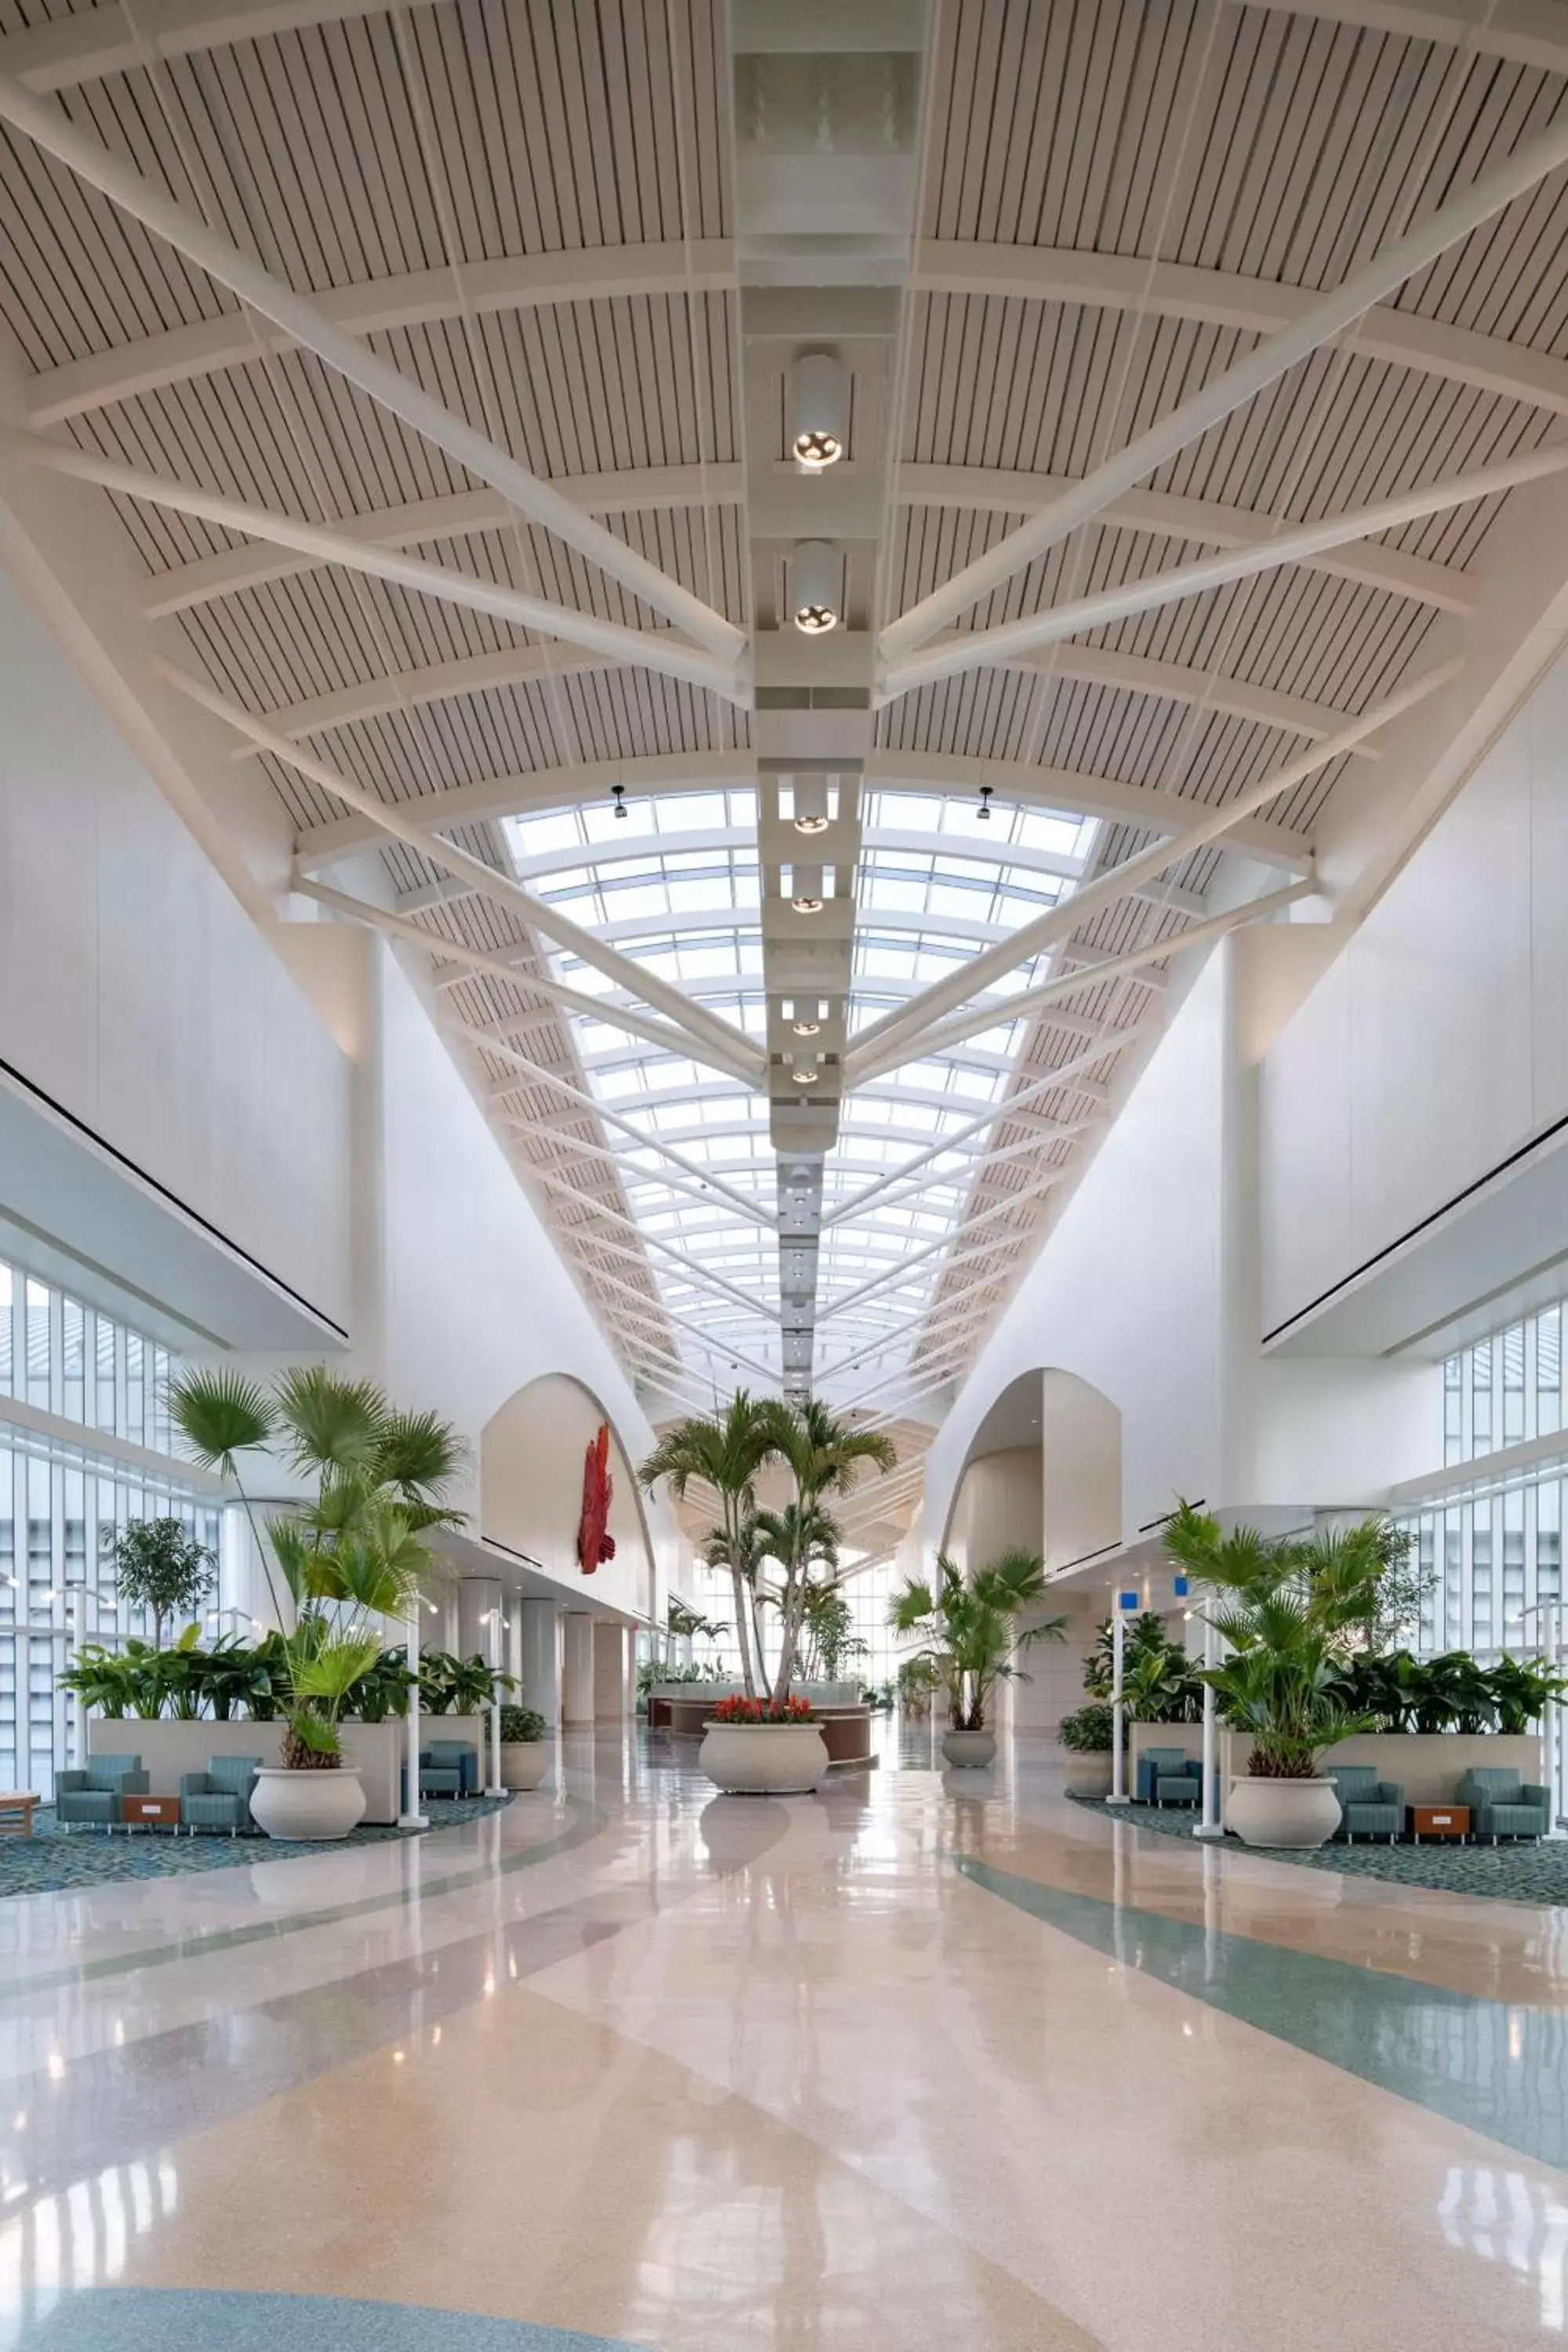 Lobby or reception in Hyatt Regency Orlando International Airport Hotel